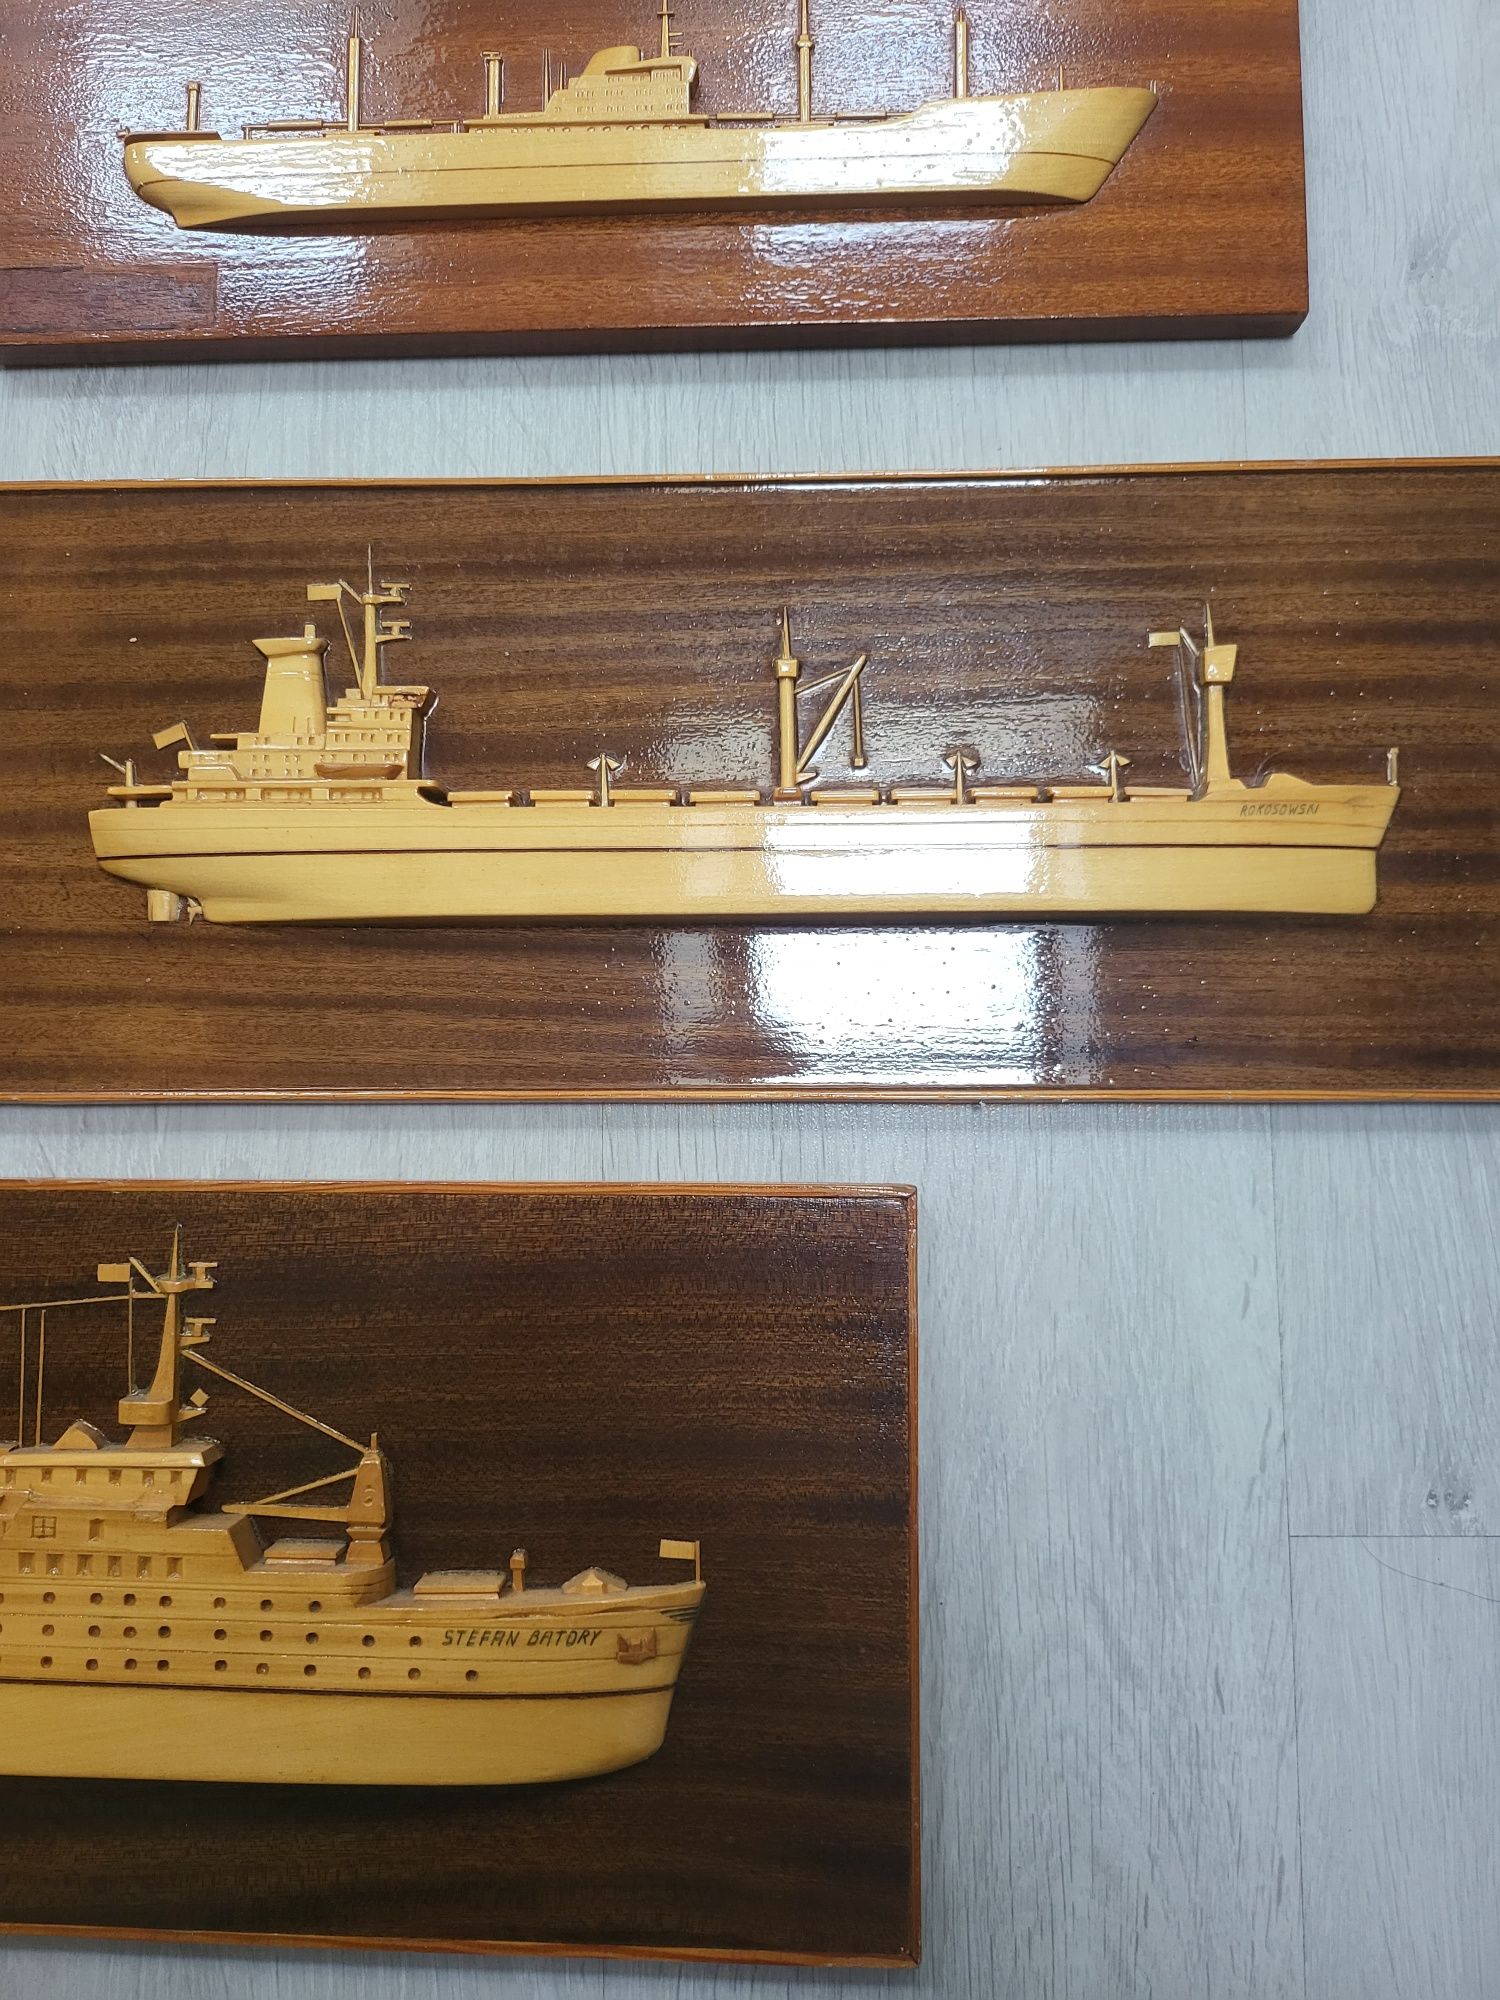 Modele statków Batory +inne